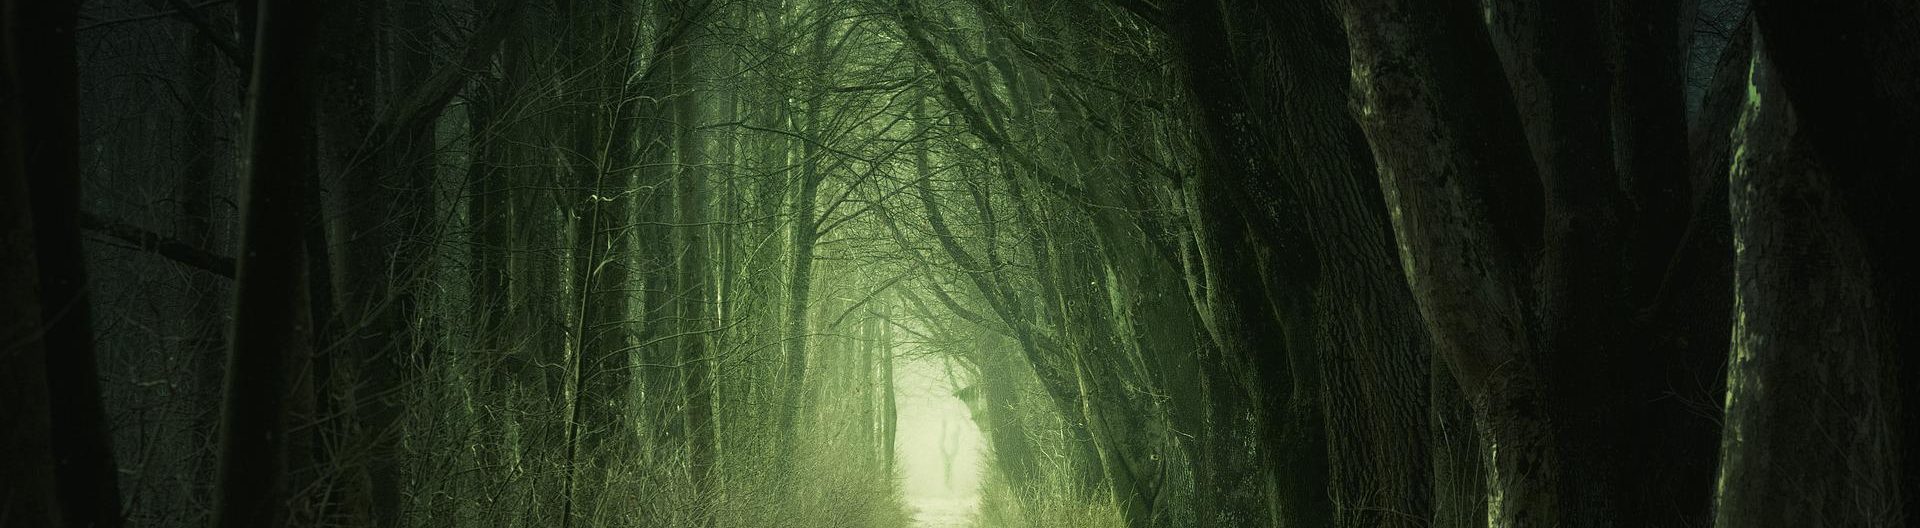 Dunkler Waldweg, in der Ferne schimmert ein hellgrünes Licht durch die finsteren Bäume.